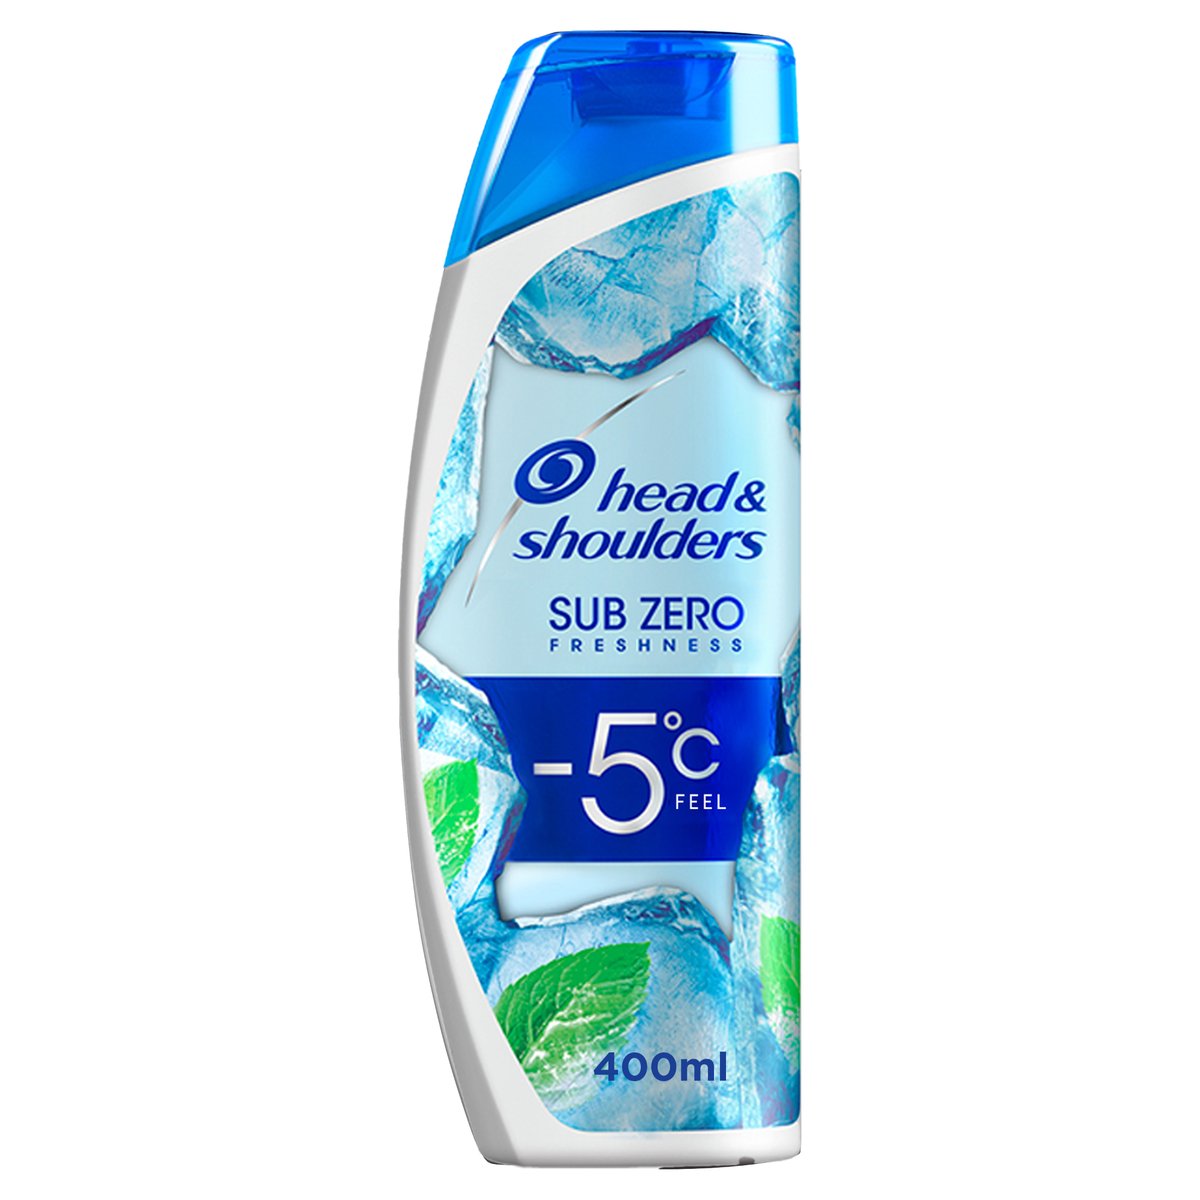 اشتري قم بشراء شامبو هيد آند شولدرز صب زيرو ضد القشرة مع المنثول المنعش 400 مل Online at Best Price من الموقع - من لولو هايبر ماركت Shampoo في السعودية